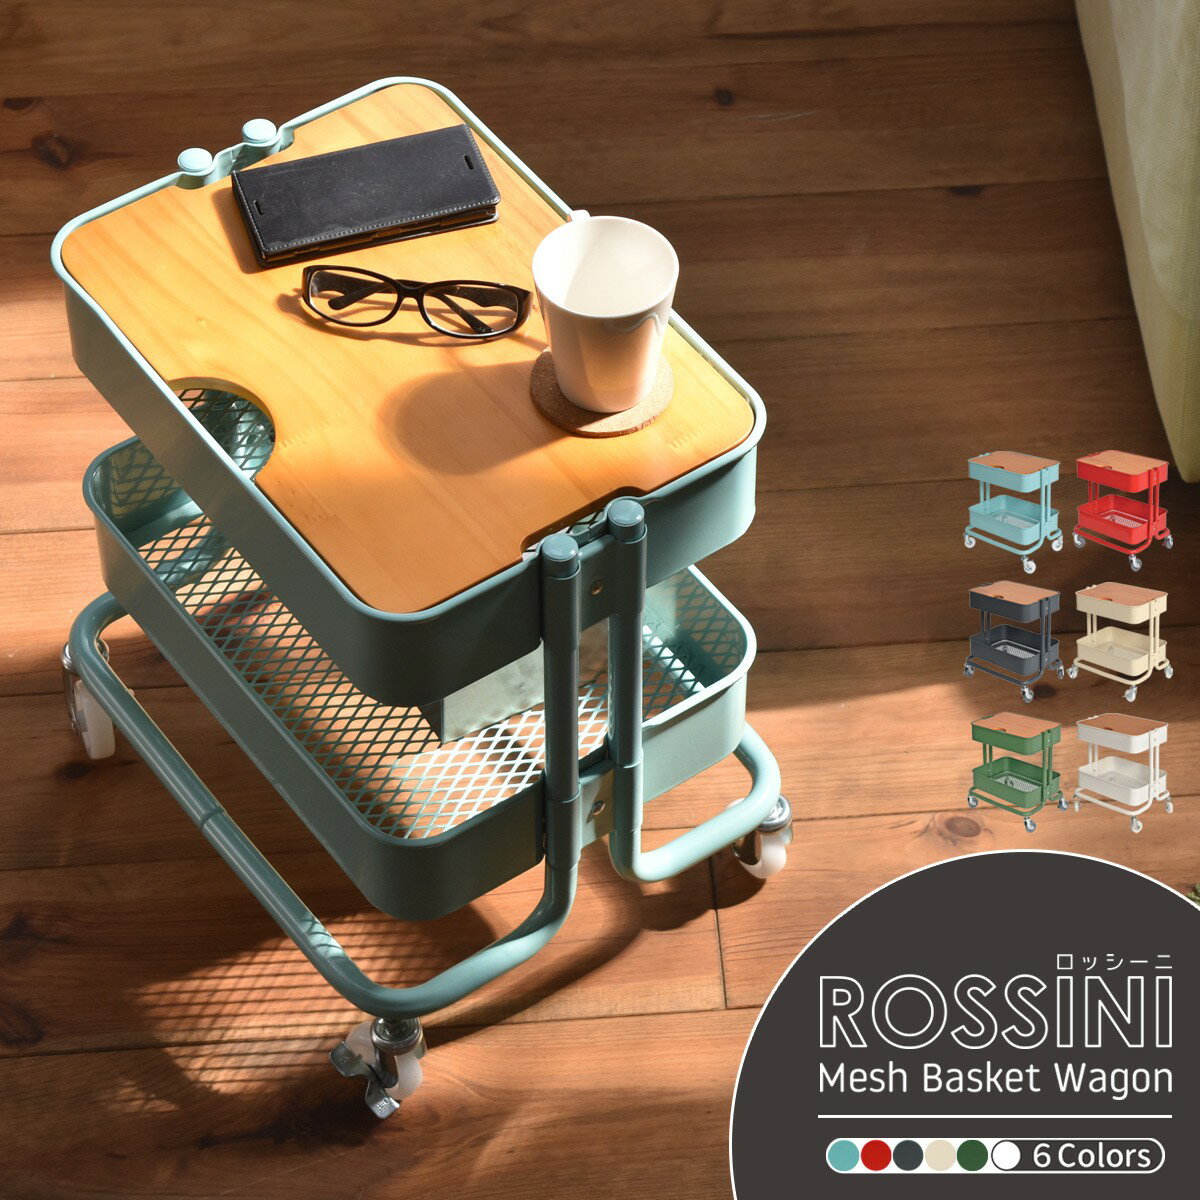 送料無料 ロッシーニ Rossini サイドテーブル キッチンワゴン 2段 ROW-F2S サイドテーブル キャスター付き バスケット ワゴン スチールラック おもちゃ箱 メッシュ 北欧 ウッド アイアン 天板 …